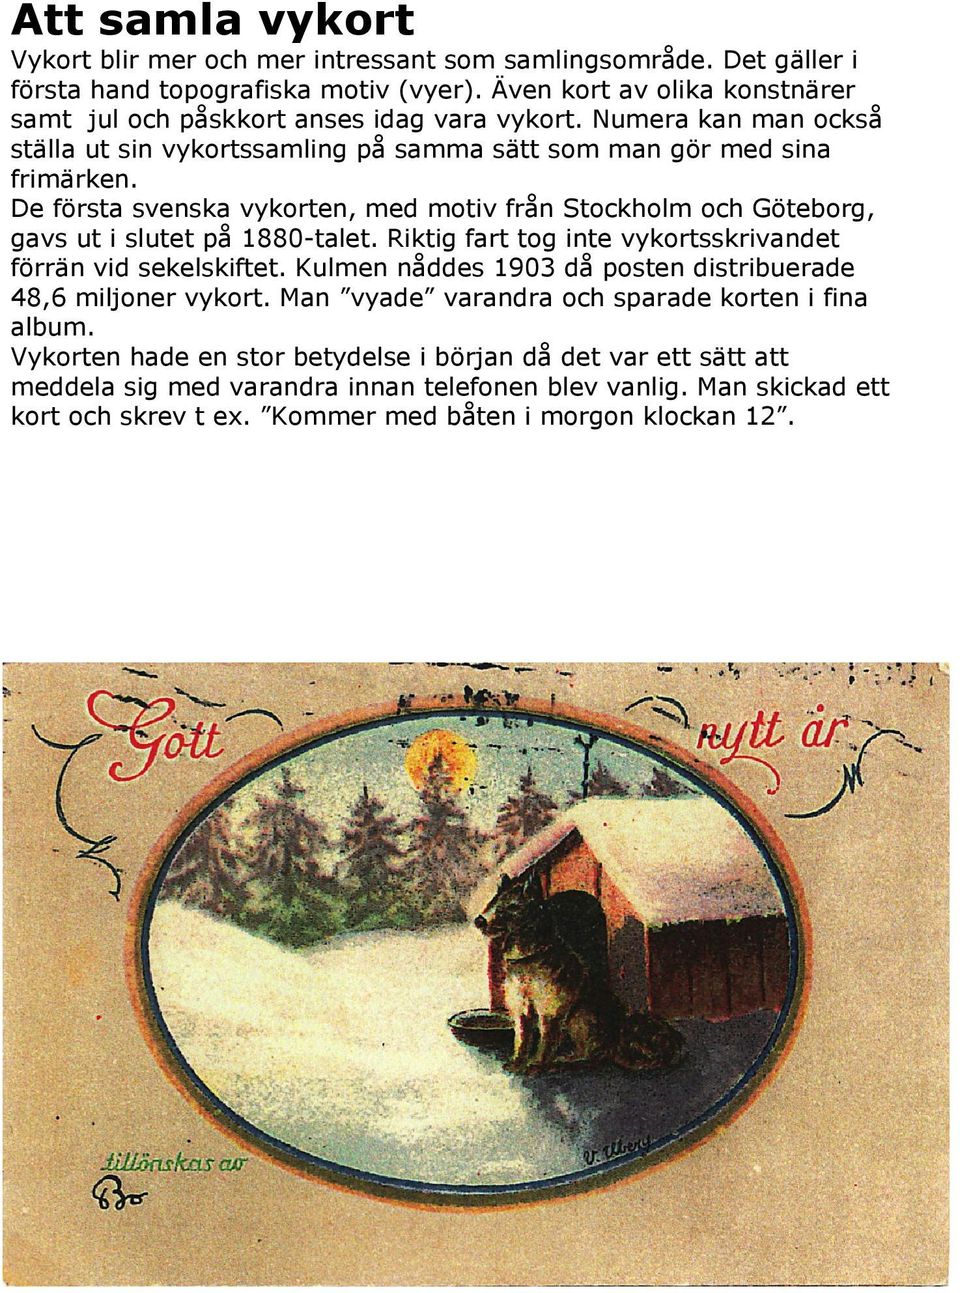 De första svenska vykorten, med motiv från Stockholm och Göteborg, gavs ut i slutet på 1880-talet. Riktig fart tog inte vykortsskrivandet förrän vid sekelskiftet.